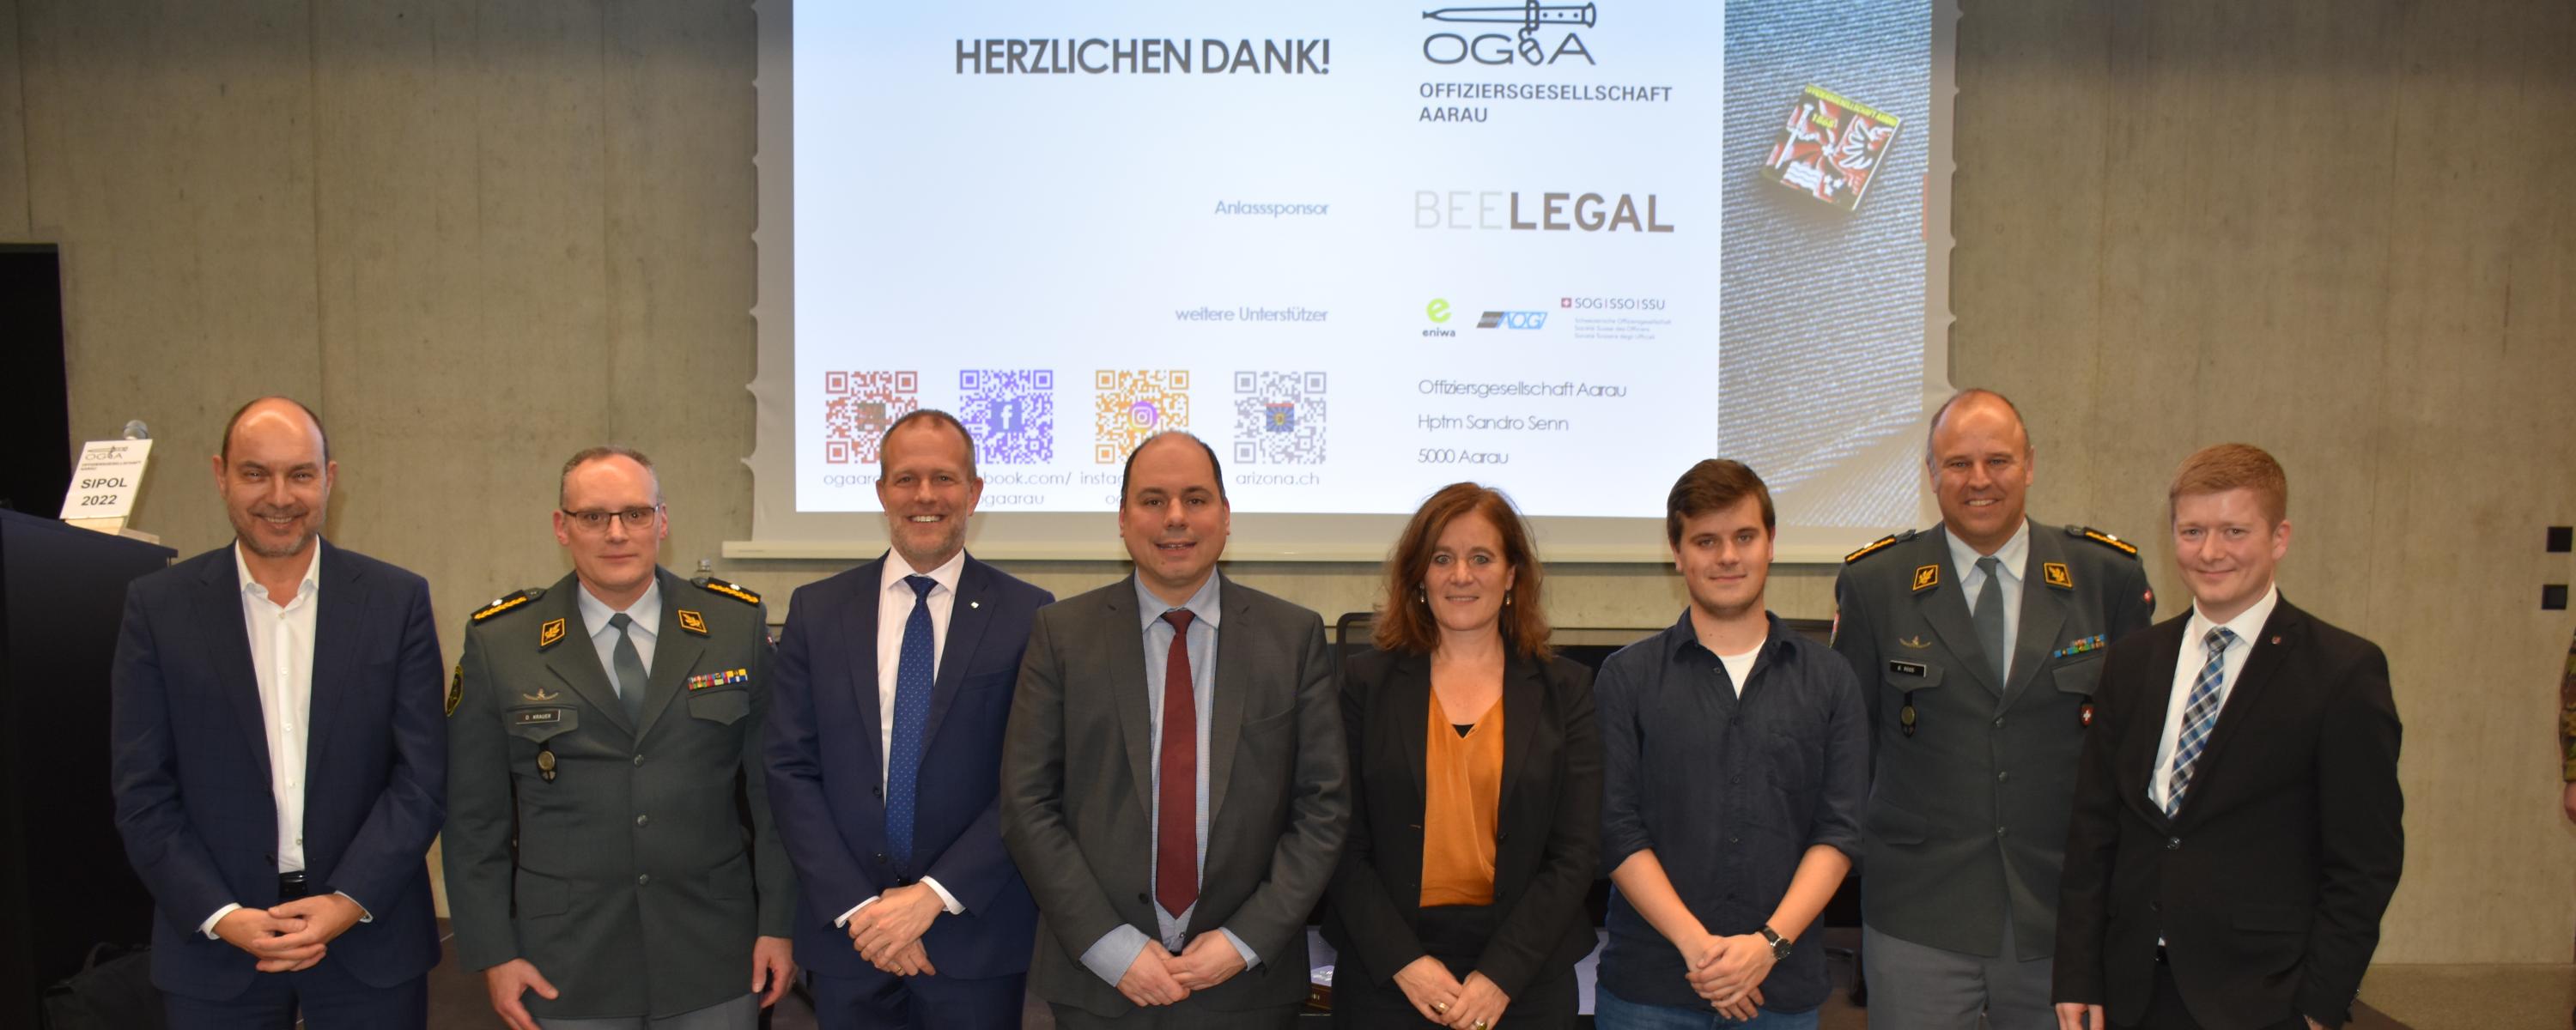 Gruppenfoto Referenten und Podiumsteilnehmer mit dem Präsidenten der OG Aarau